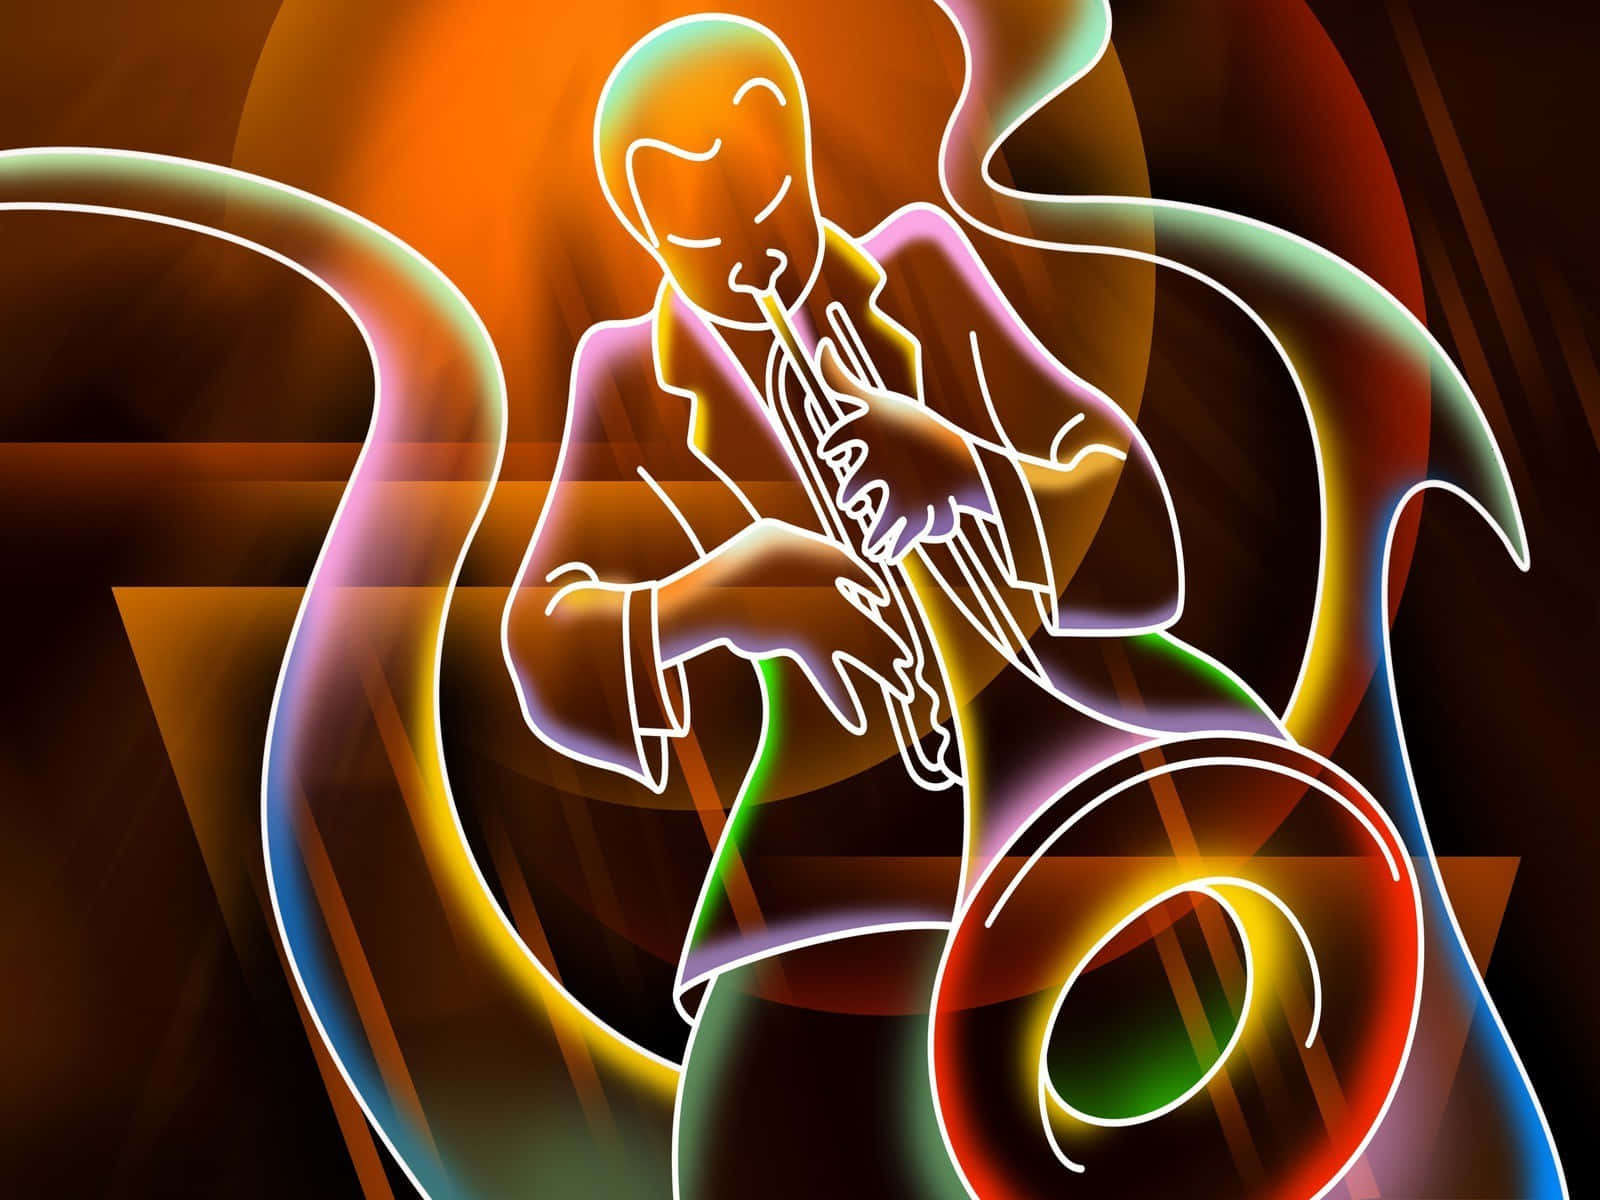 Etfarverigt Billede Af En Saxofonspiller.